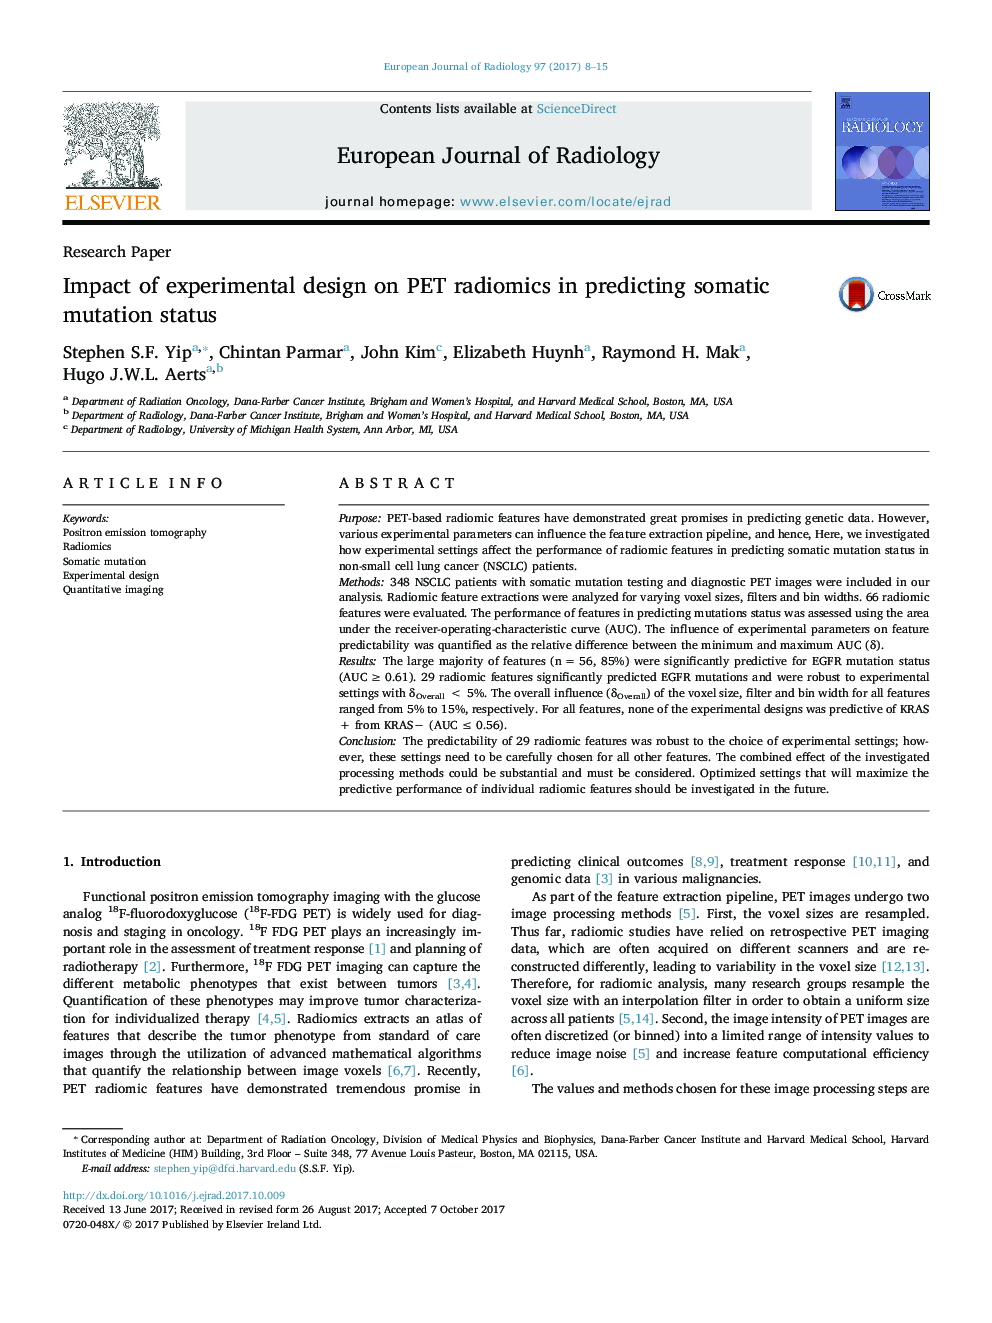 Research PaperImpact of experimental design on PET radiomics in predicting somatic mutation status